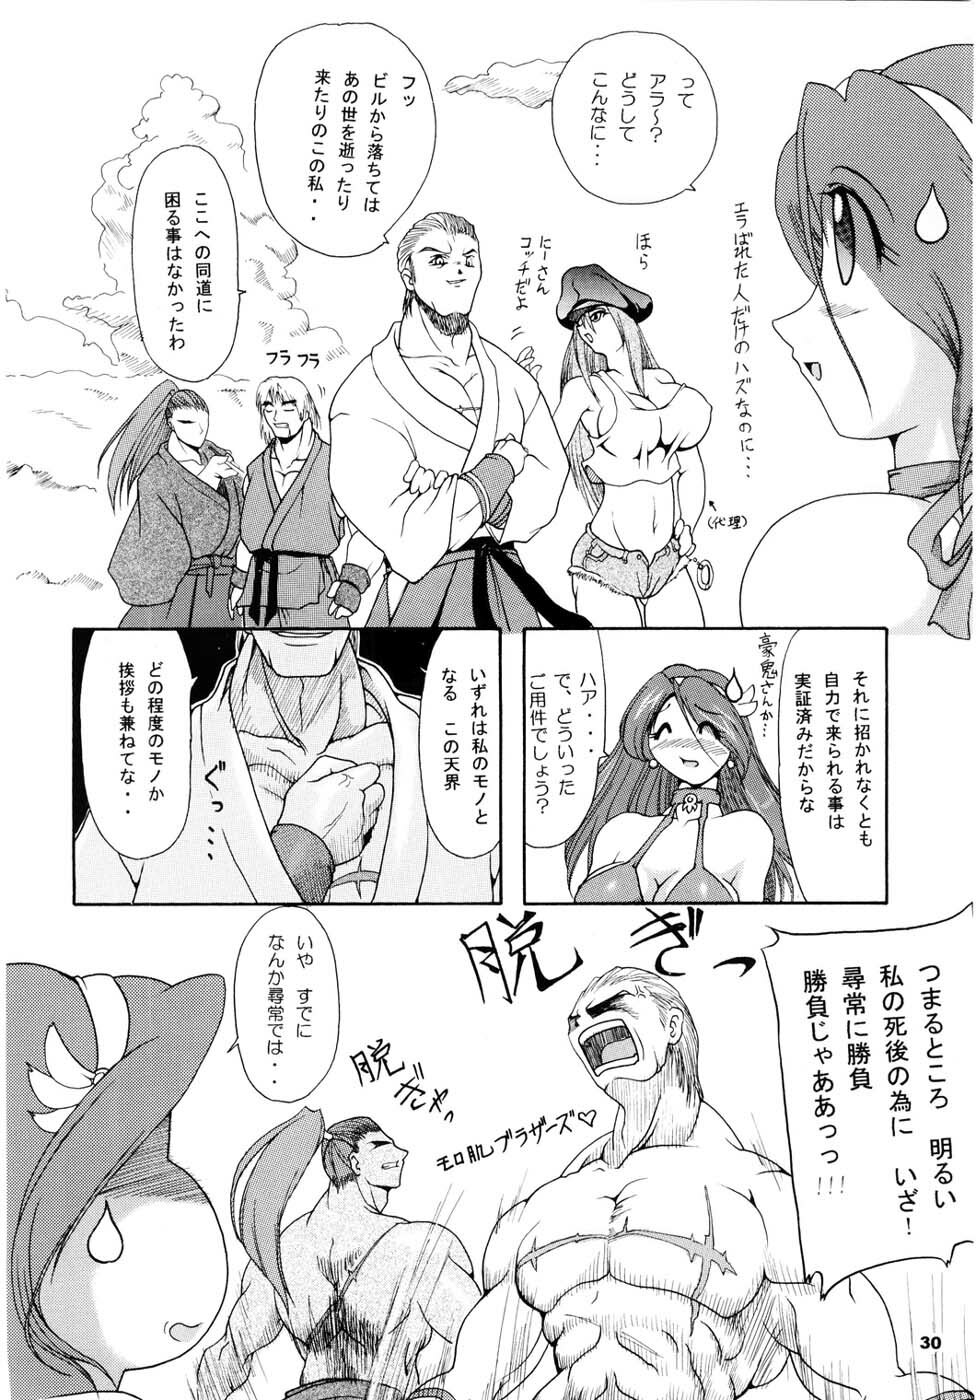 [Furuya (TAKE)] Kakuge Zanmai Retake Plus (Various) page 29 full